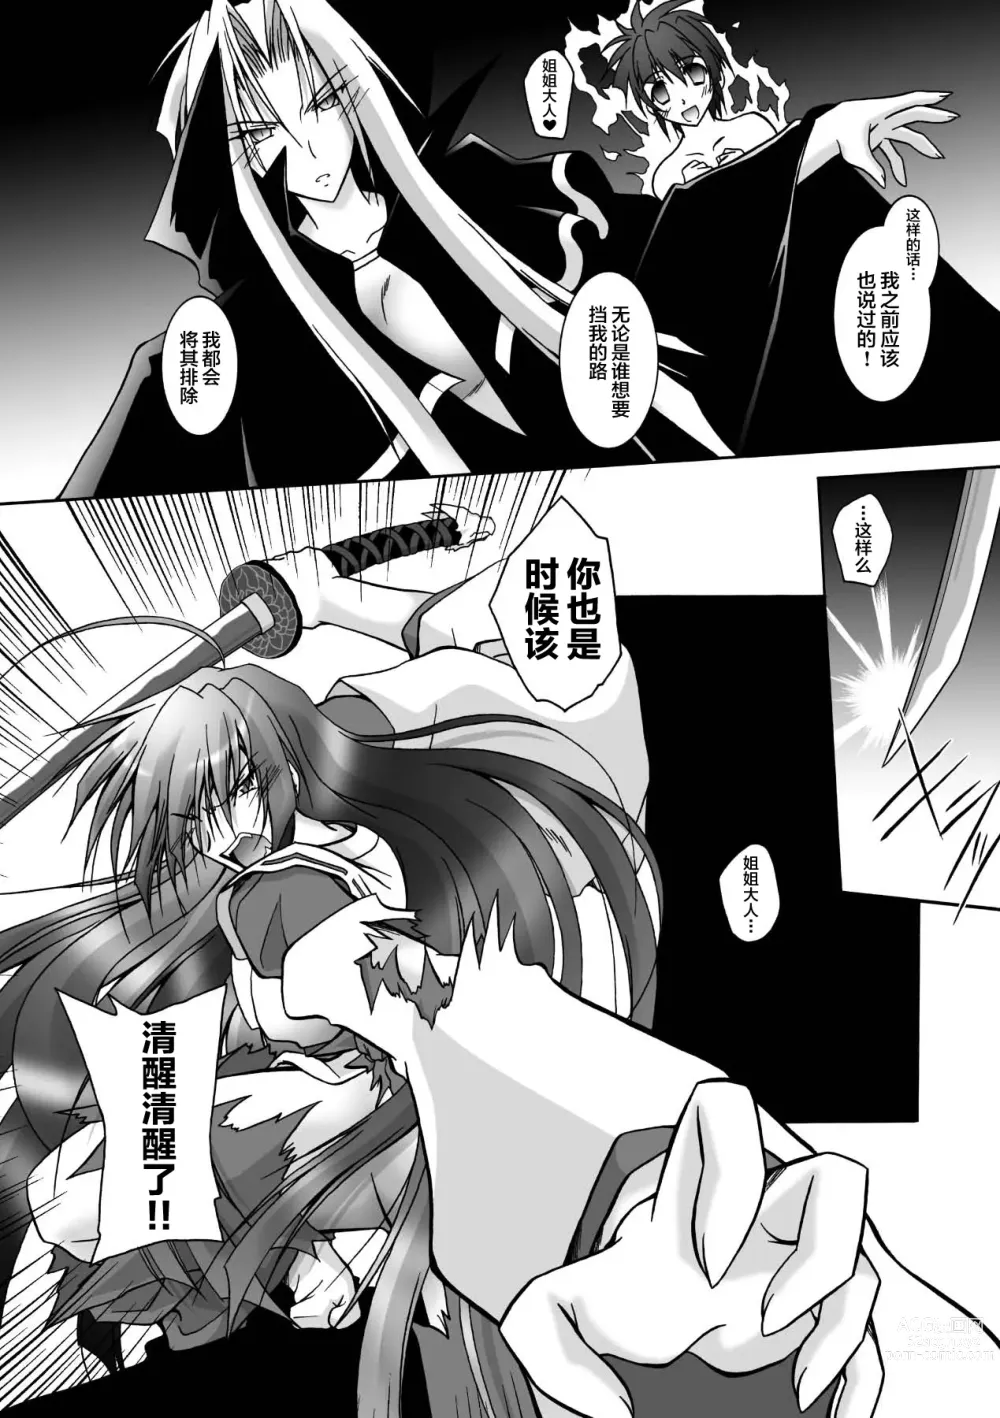 Page 152 of manga Matantei Toudou Shizuka no Inyou Jikenbo